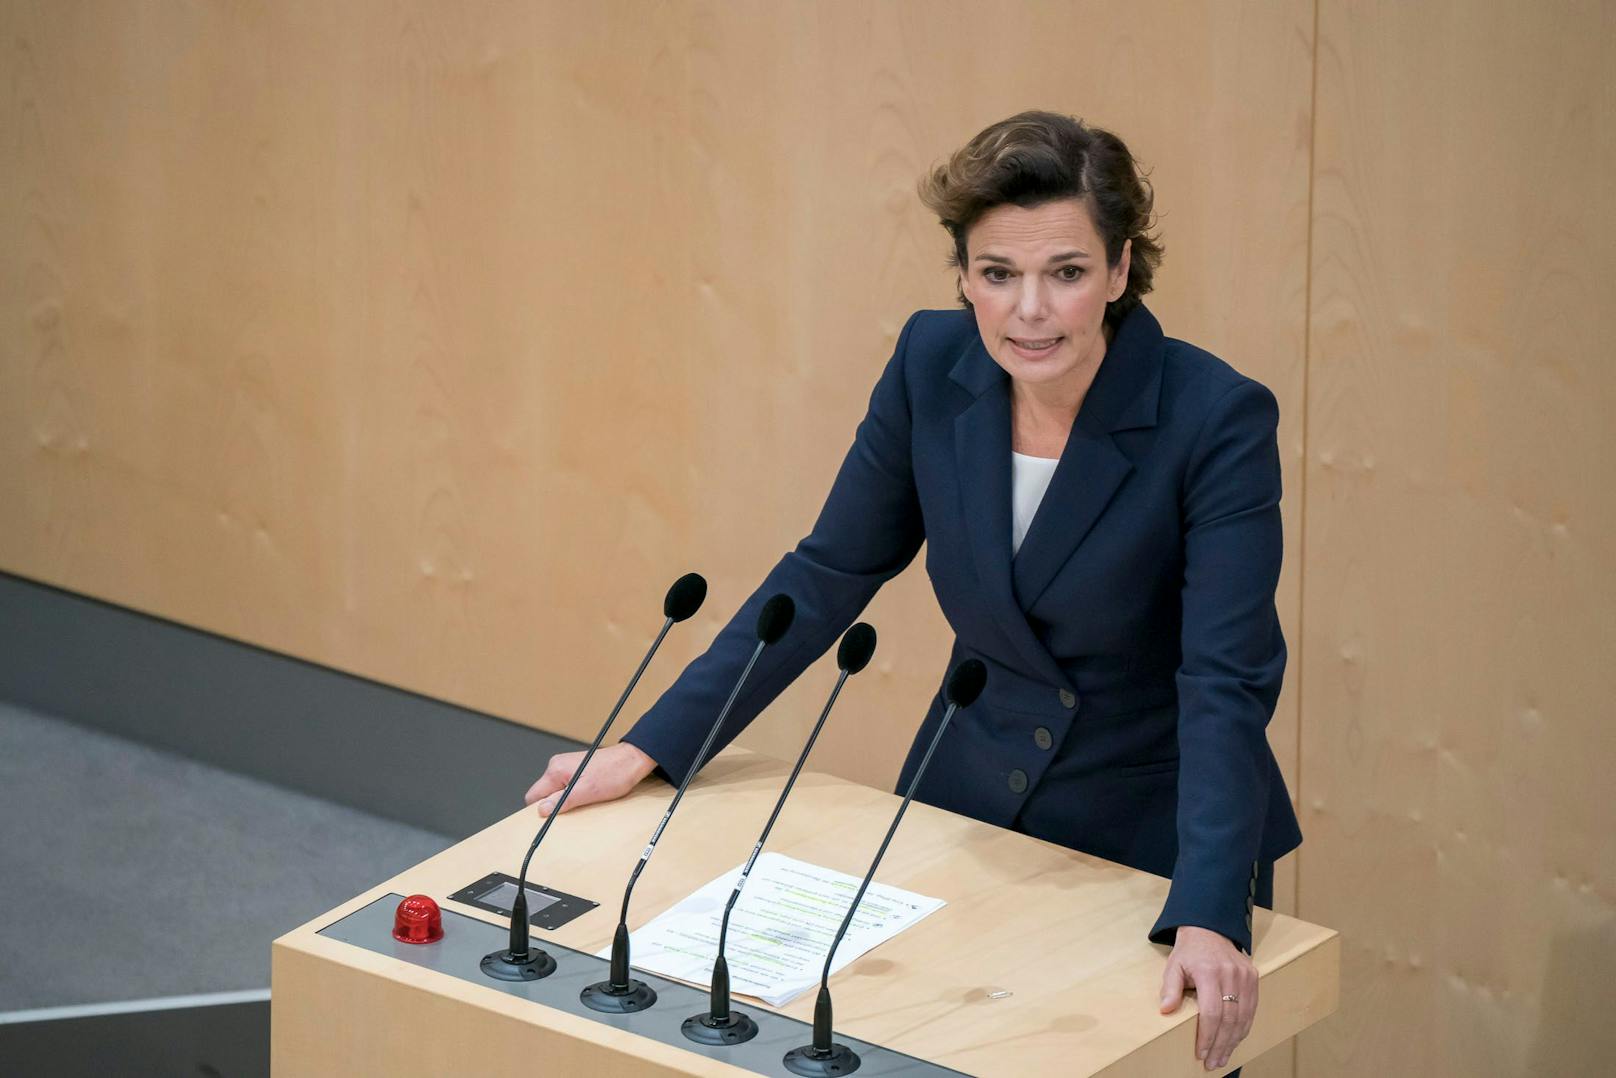 SPÖ-Chefin Pamela Rendi-Wagner schmerzt das Ergebnis der wahl, die SPÖ sieht sie aber als Nummer 1 bestätigt.